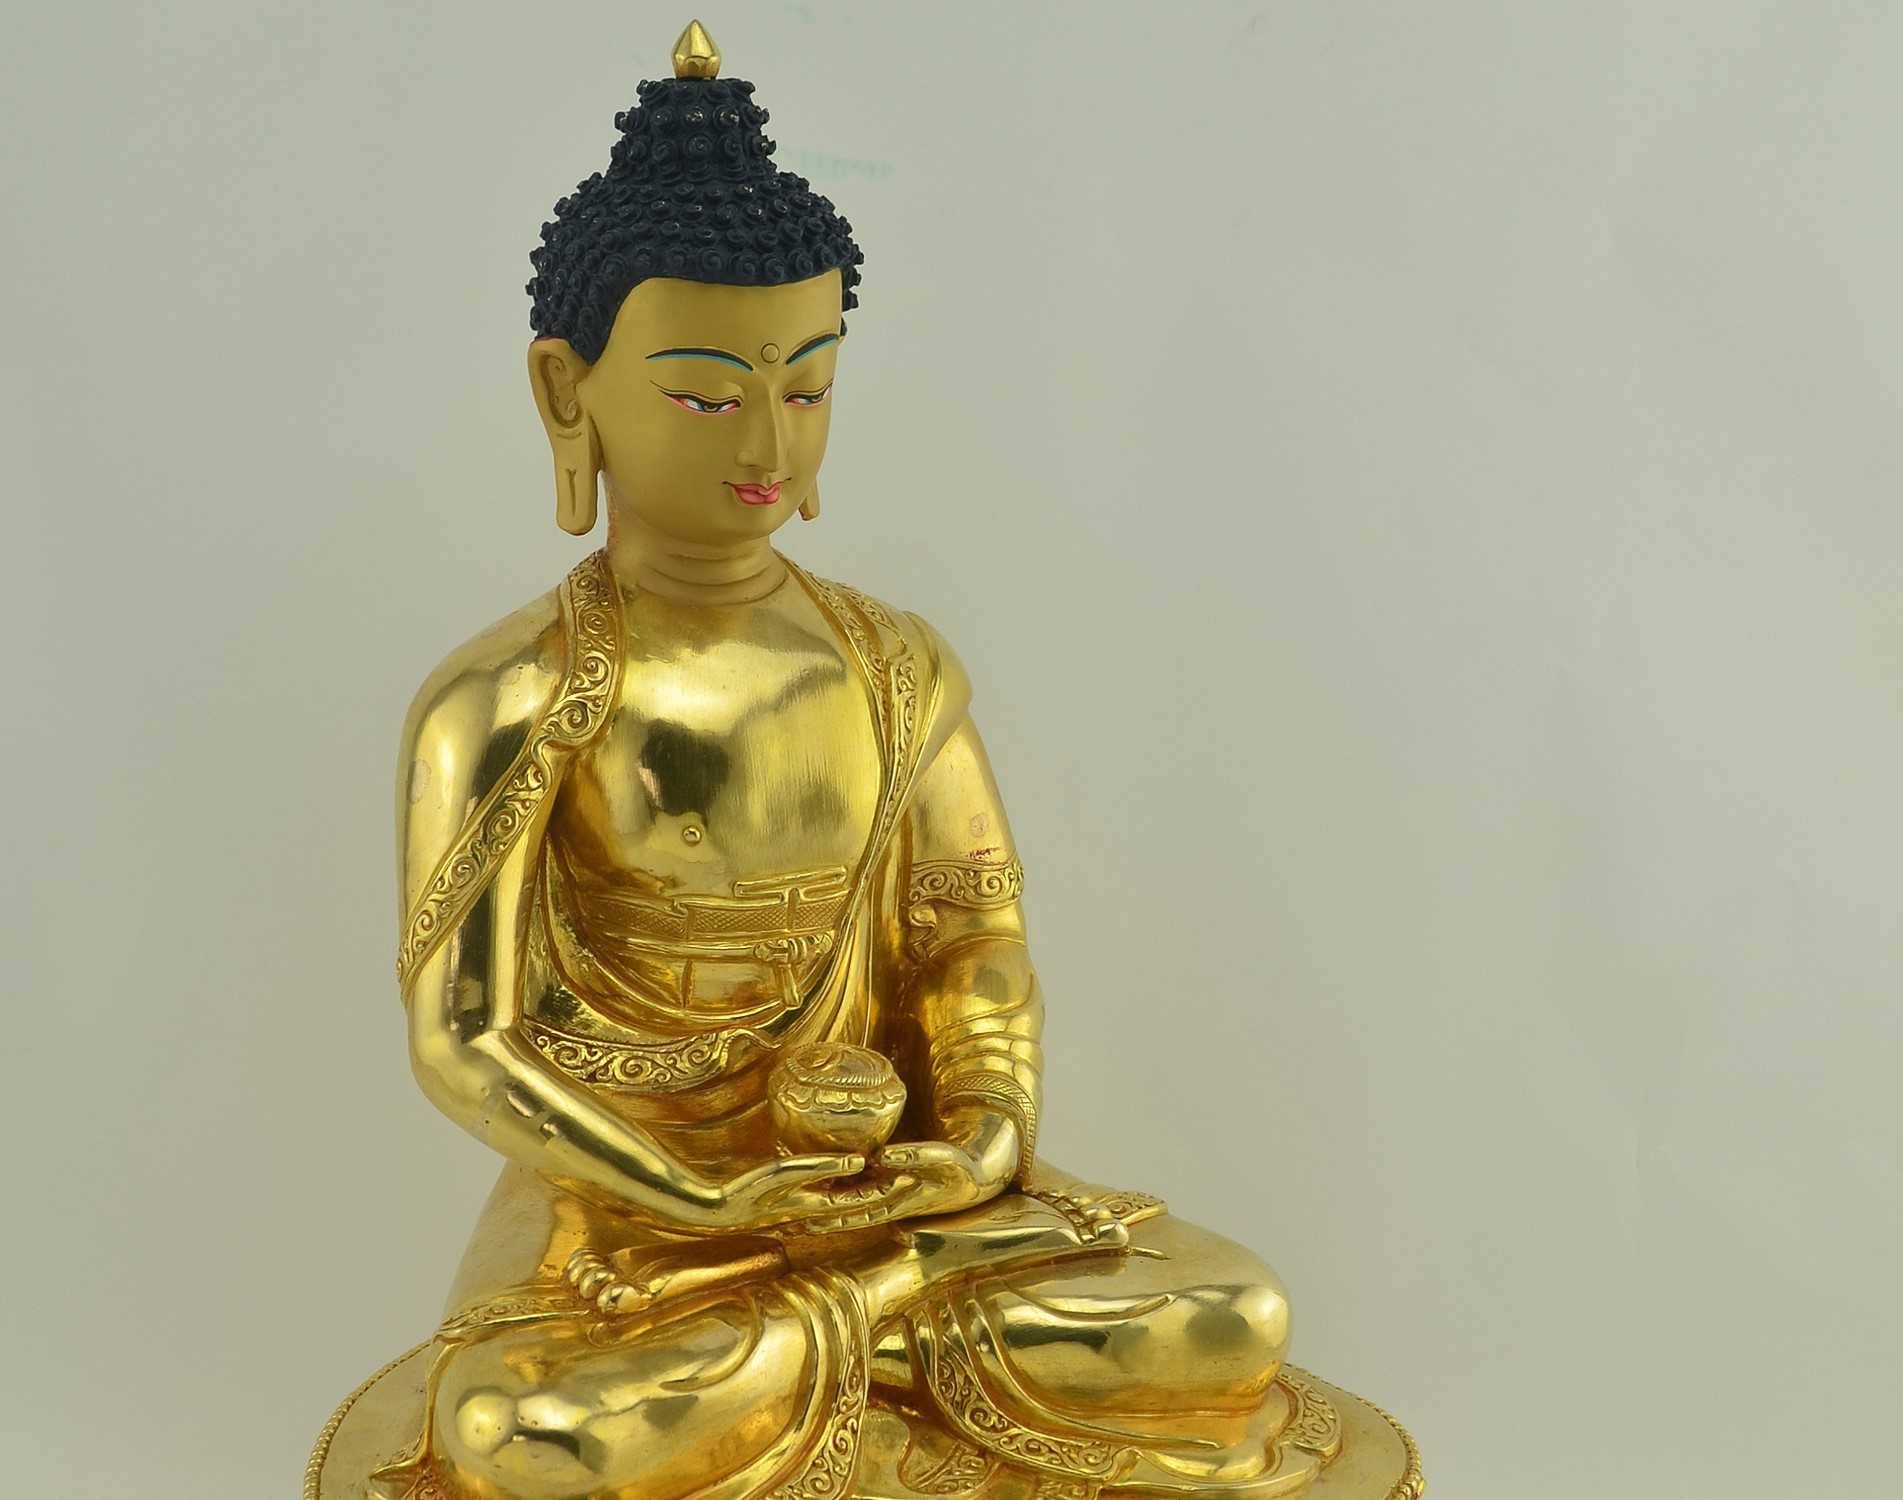 Amitabha Buddha statue of Infinite Light and Life